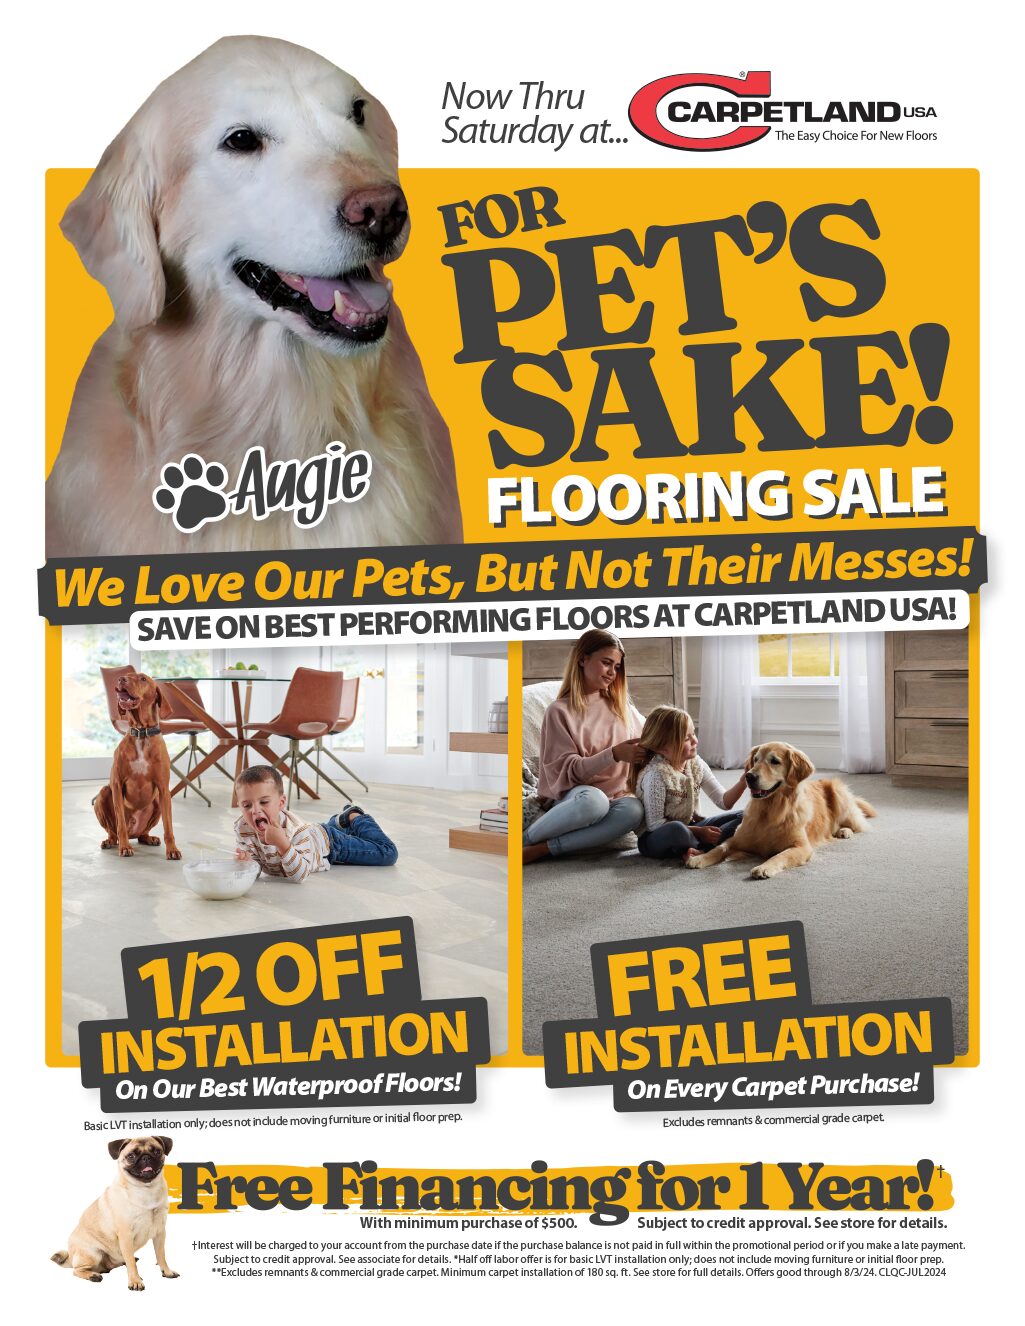 For Pet's Sake Flooring Sale!